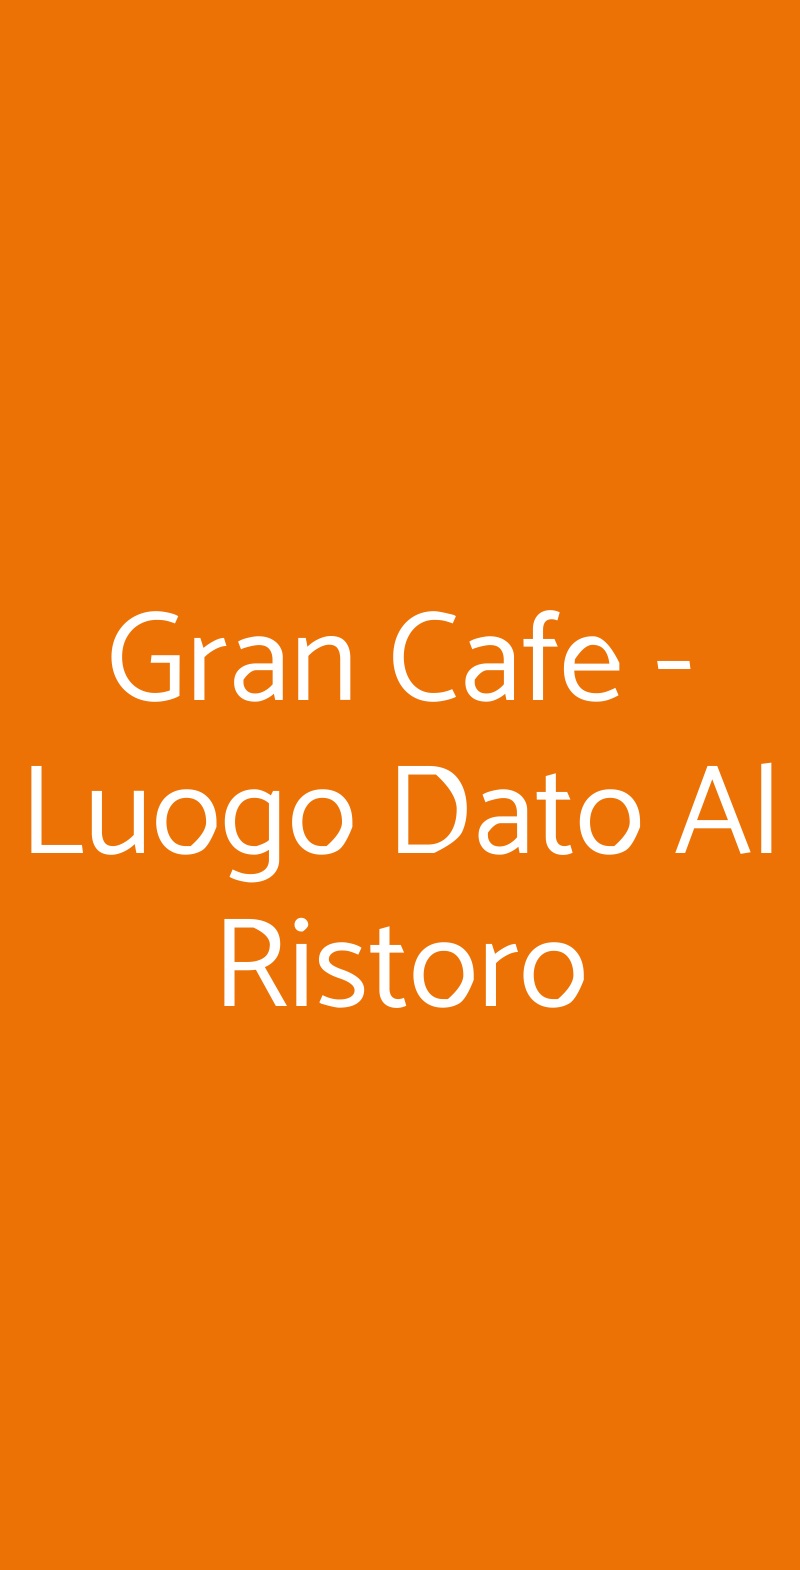 Gran Cafe - Luogo Dato Al Ristoro Bologna menù 1 pagina